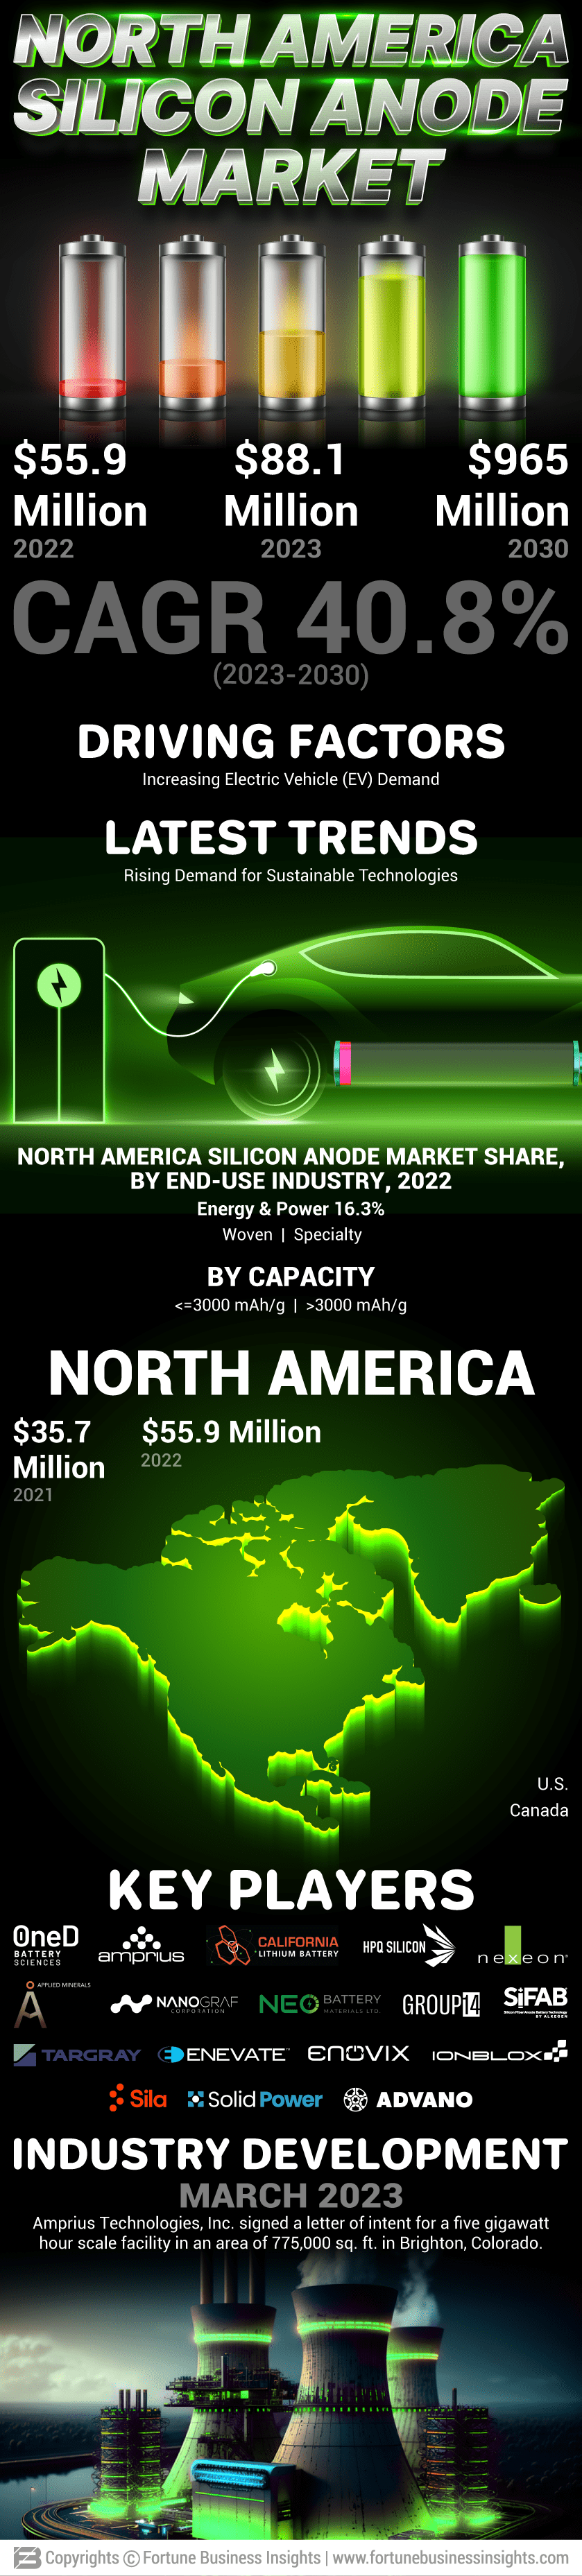 North America Silicon Anode Market